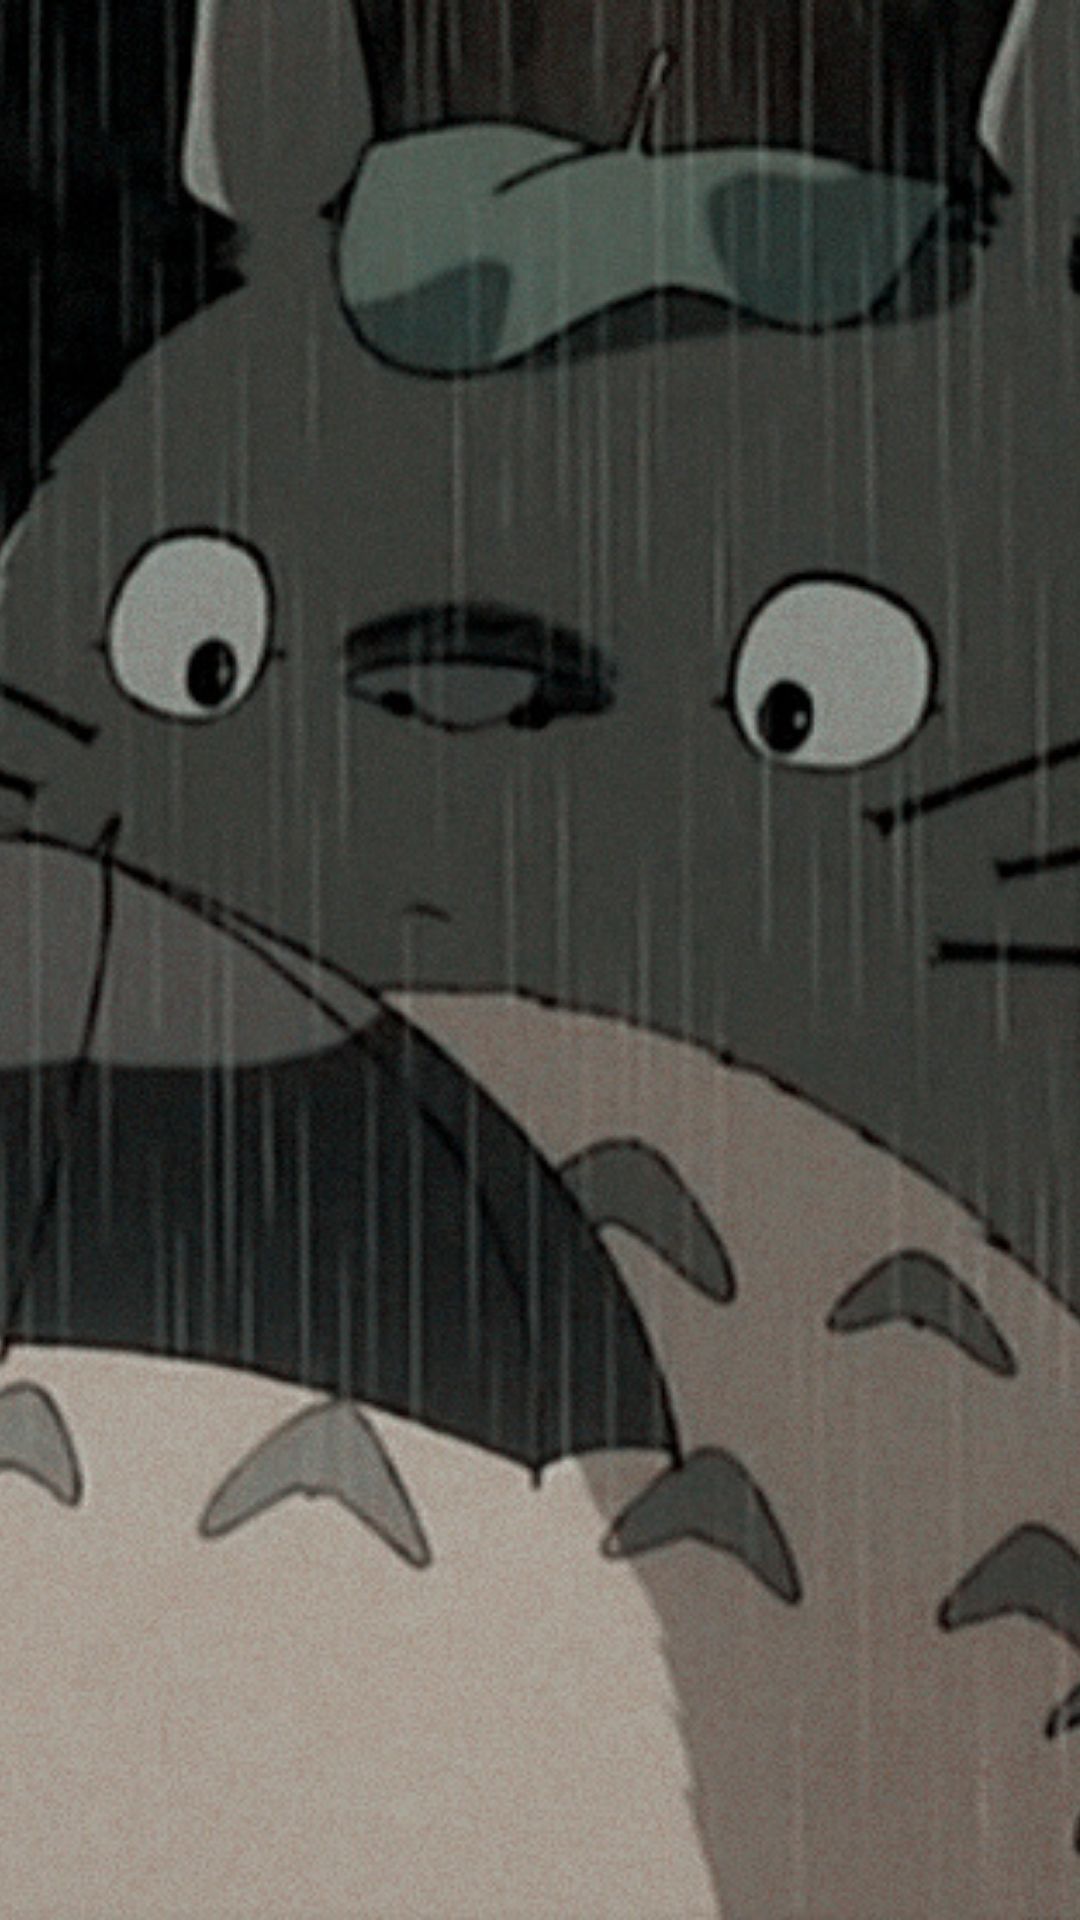 ୭ My Neighbor Totoro Studio Ghibli 天使 ᴀɴɢᴇʟ